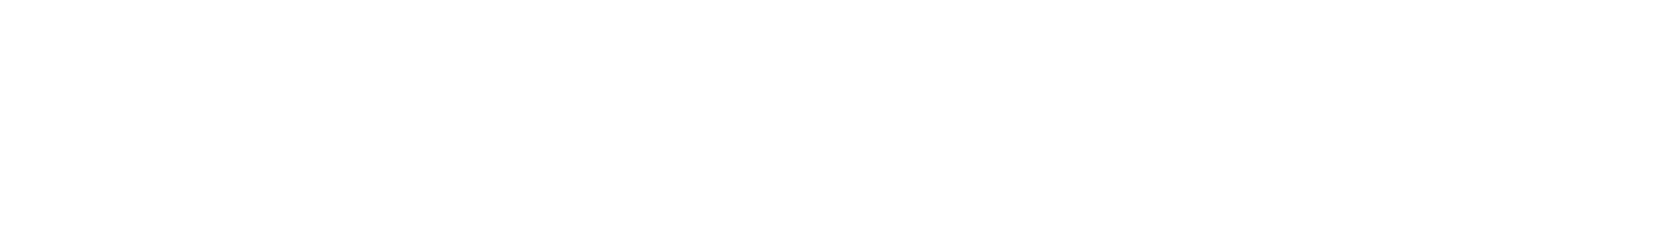 Morgan Stanley Logo groß für dunkle Hintergründe (transparentes PNG)